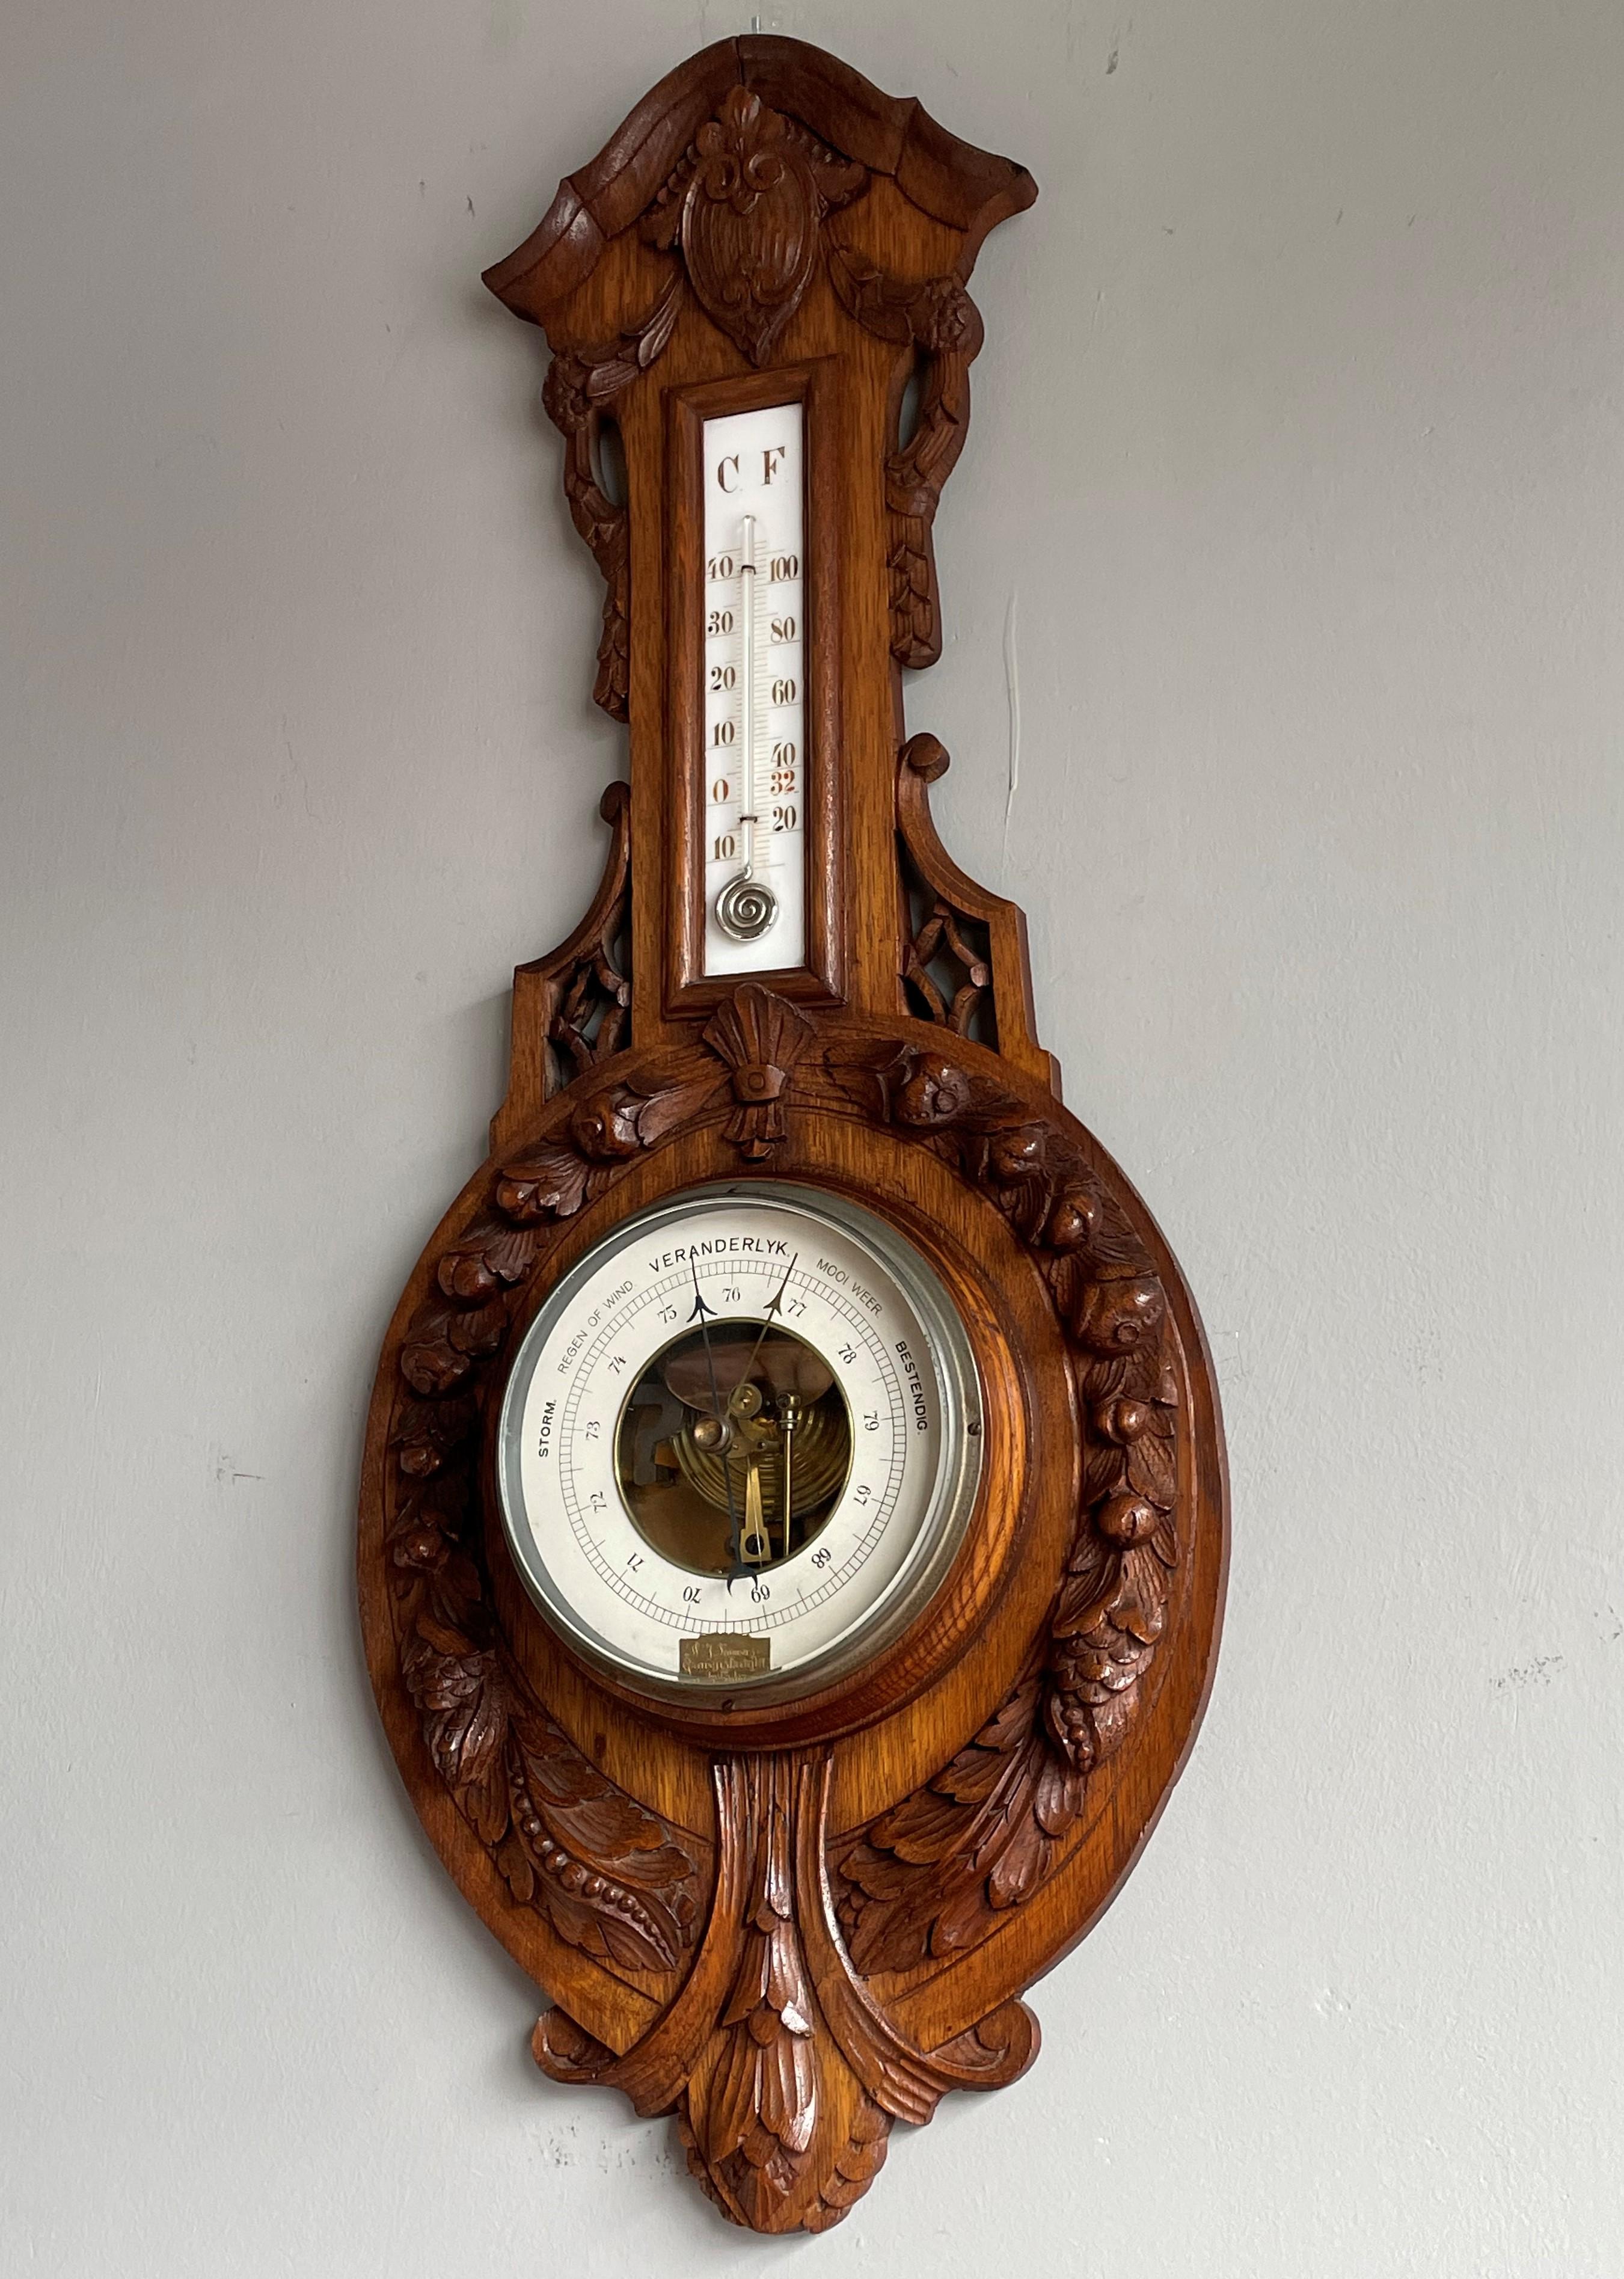 Wunderschönes holländisches Barometer und Thermometer aus der Zeit des Arts and Crafts.

Es wird sogar mit einer kleinen vergoldeten Messingplakette im Barometerfenster geliefert, auf der W.J. steht. Lauwers, Gravenstraat 1, Amsterdam.

Dieses